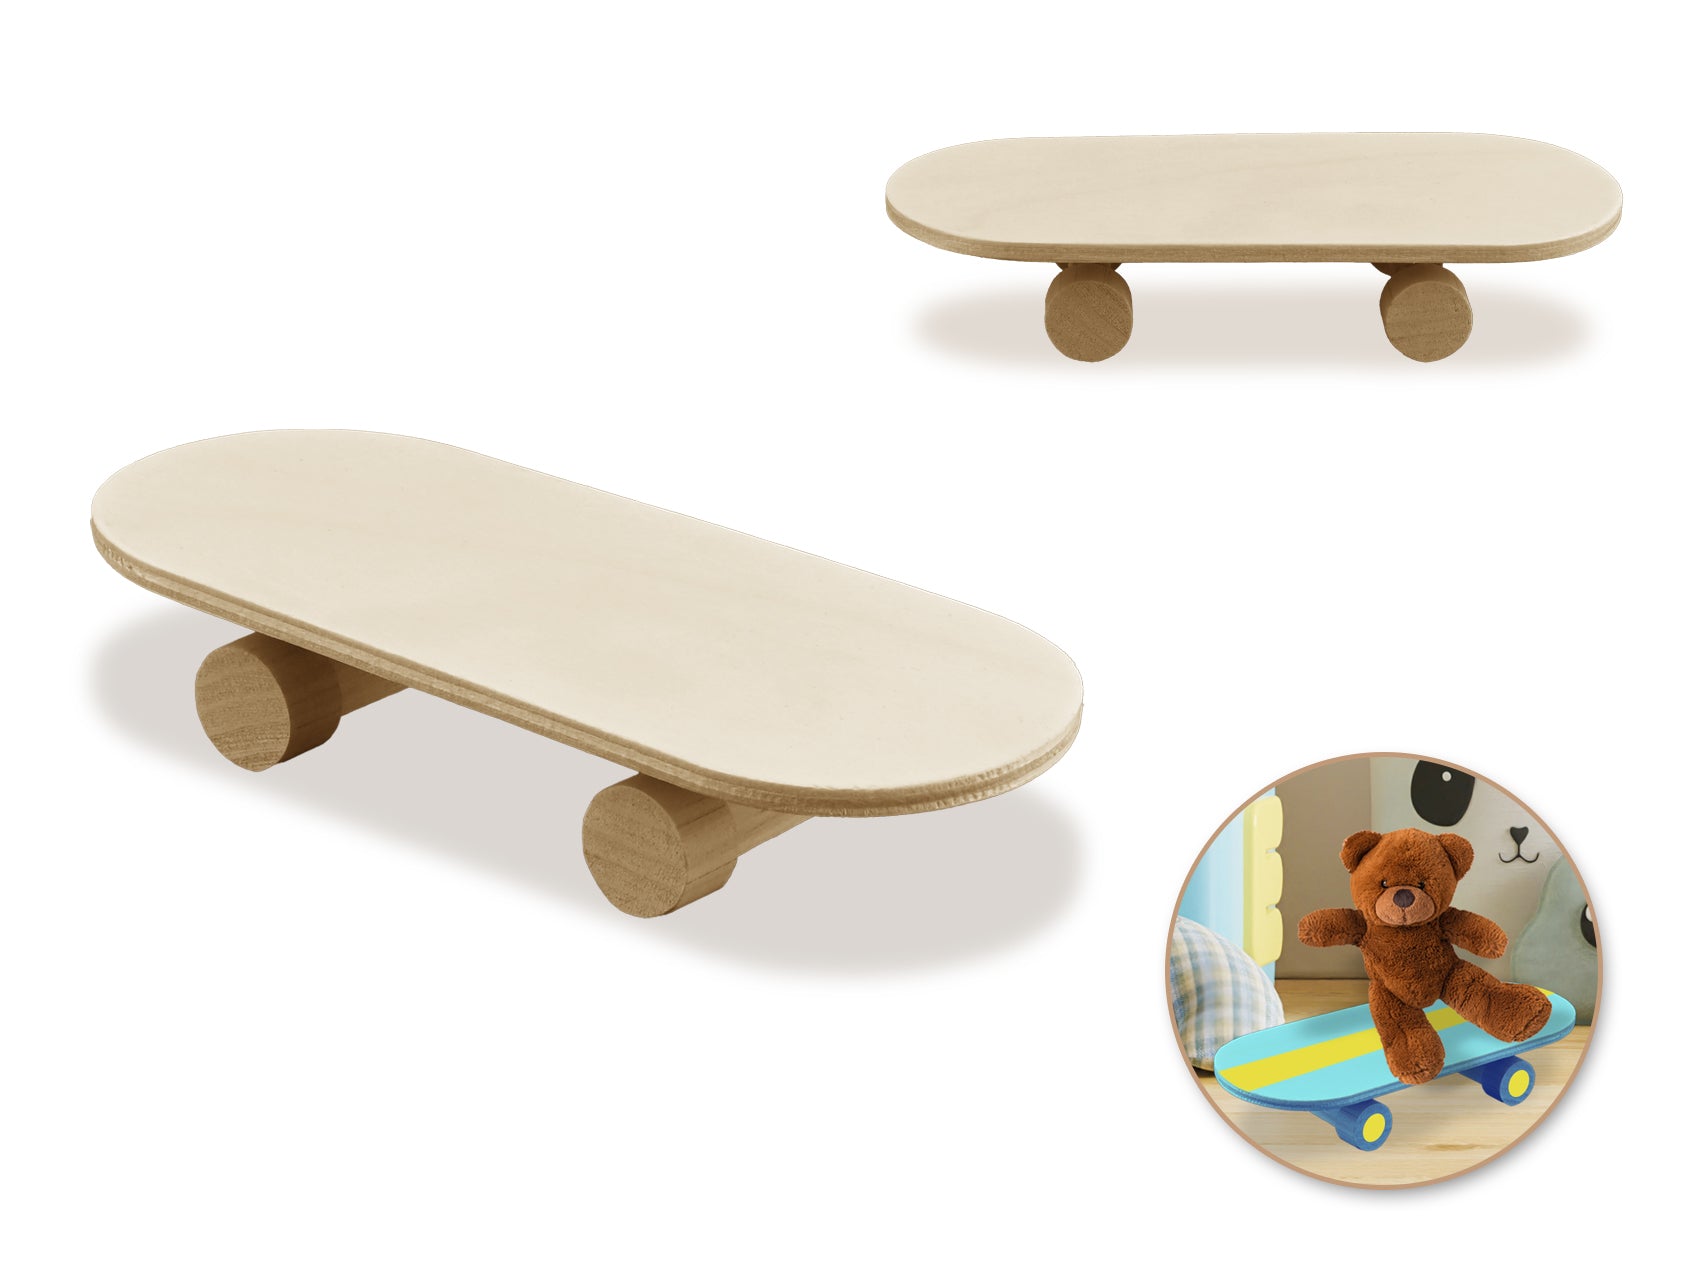 Wood Craft: 6"x2.5"x1" Skateboard w/Moving Wheels